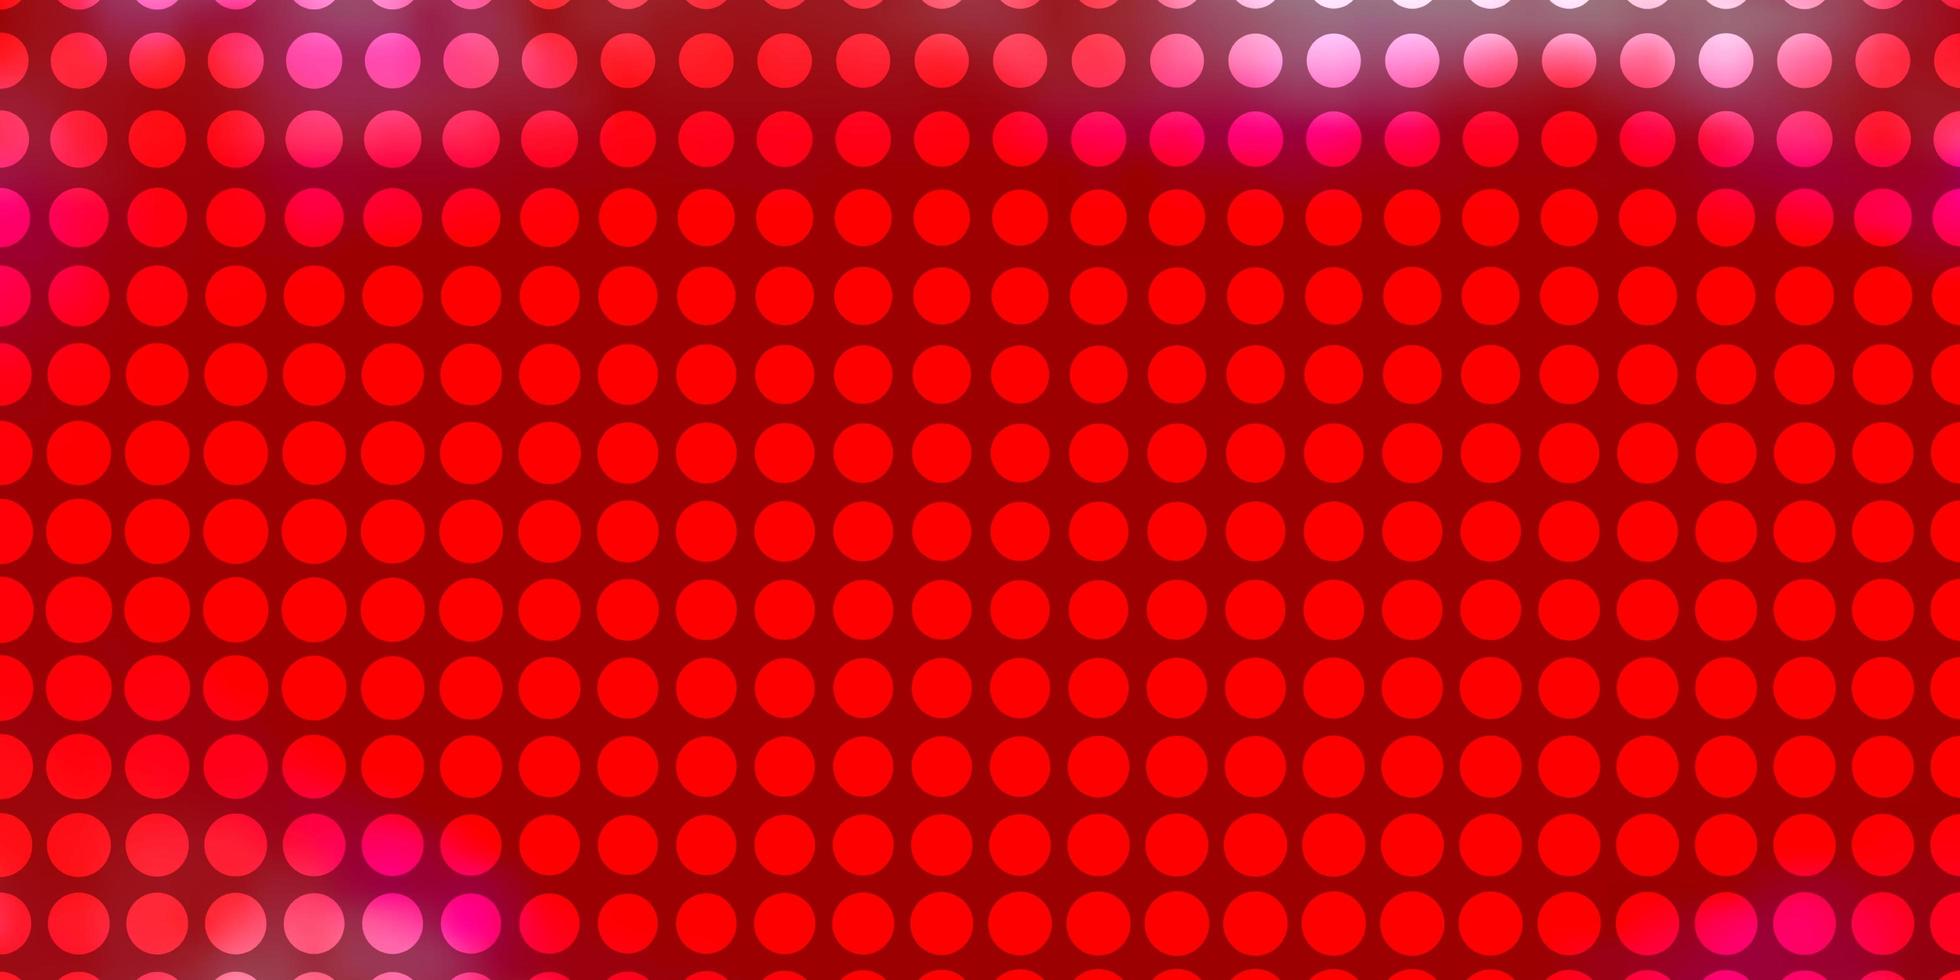 sfondo vettoriale rosso chiaro con cerchi. illustrazione con set di brillanti sfere astratte colorate. design per i tuoi spot pubblicitari.